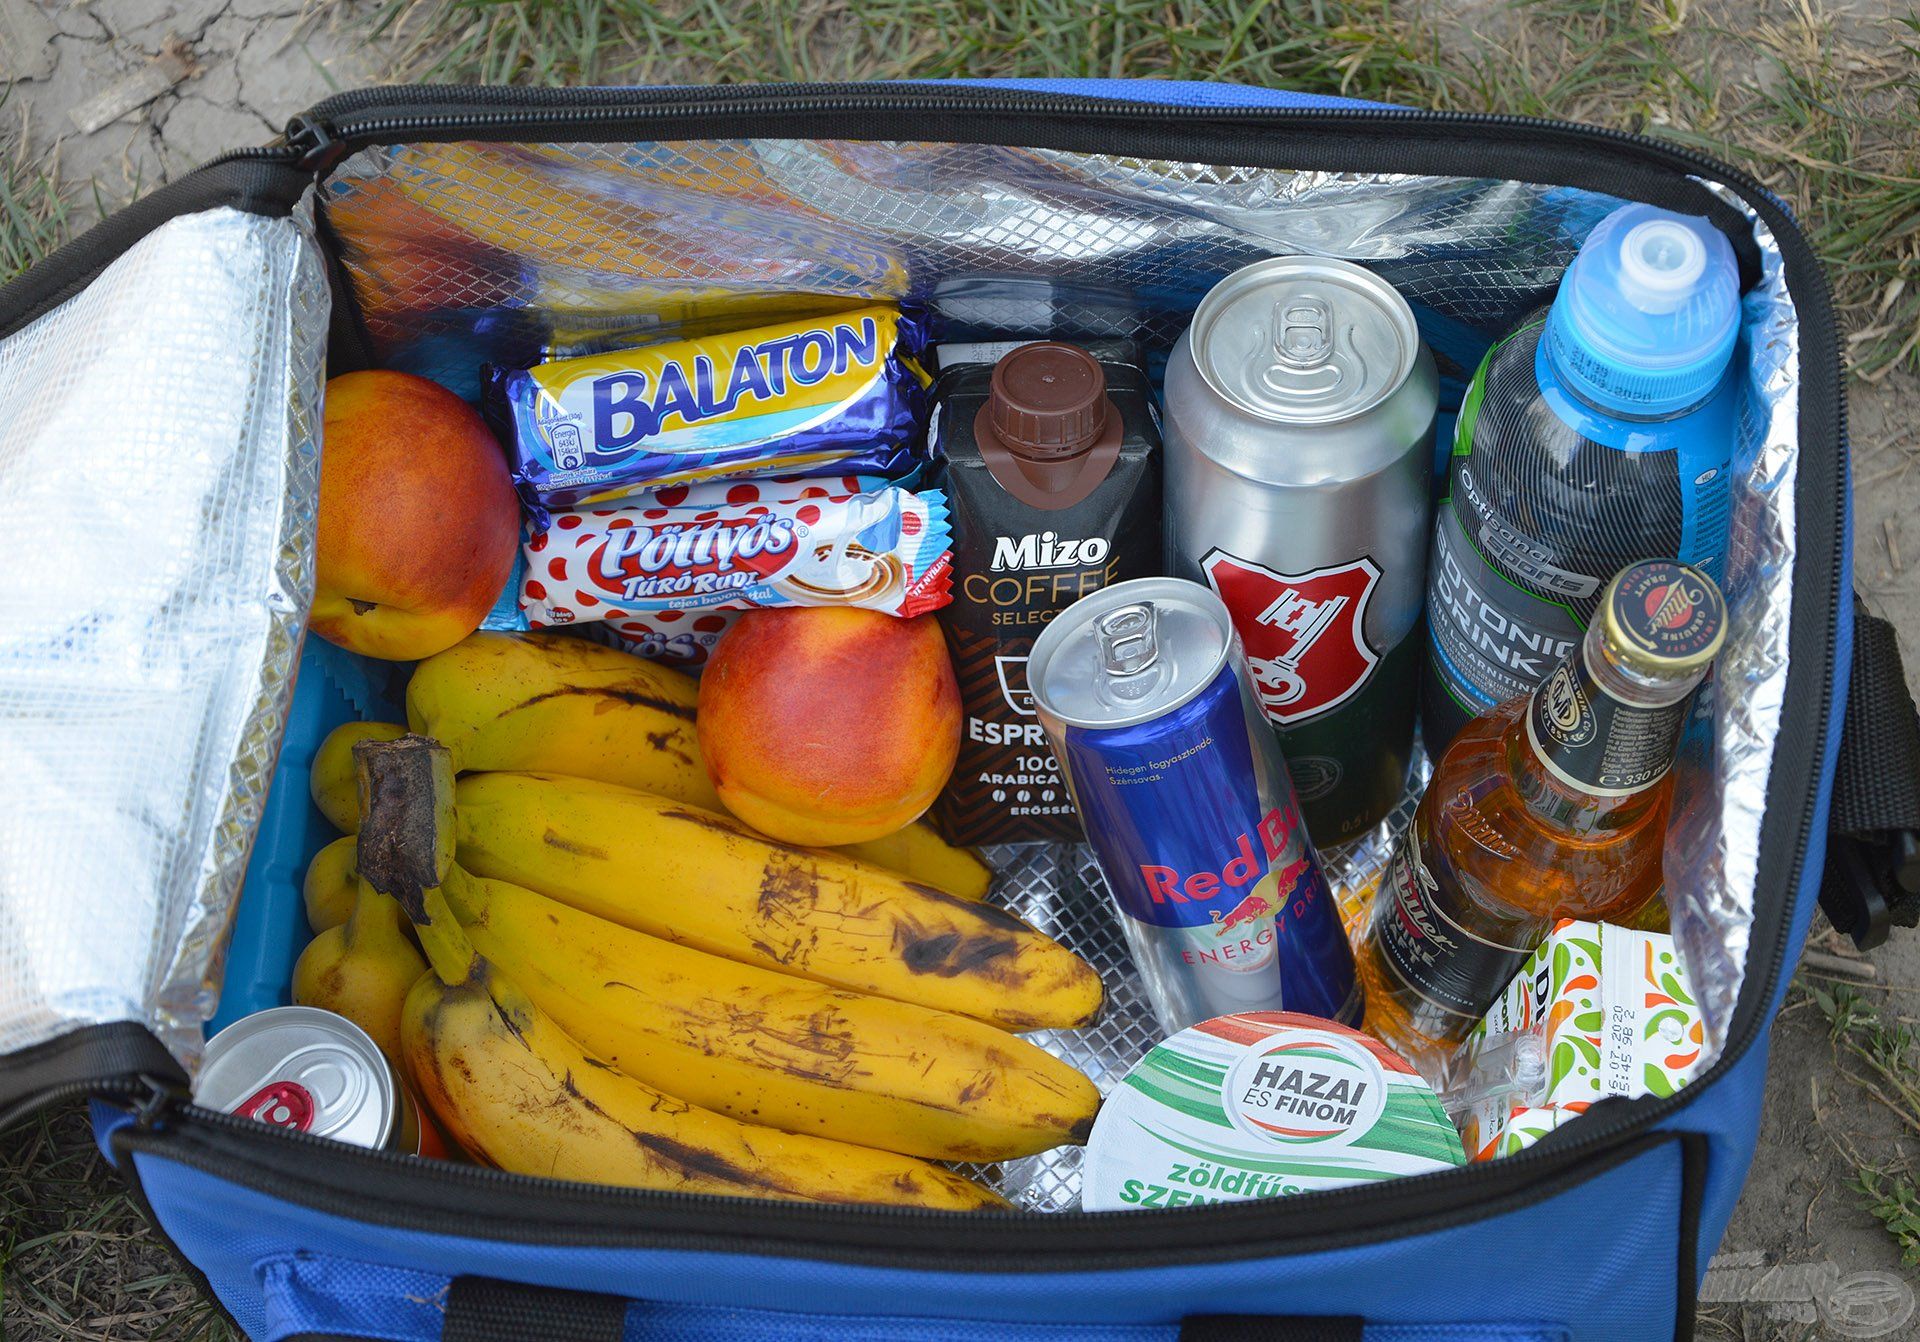 Ebben a táskában nyugodtan tárolhatjuk a magunknak szánt élelmiszereket, üdítőket, hiszen azok egész biztos, hogy nem fognak megromlani, felmelegedni